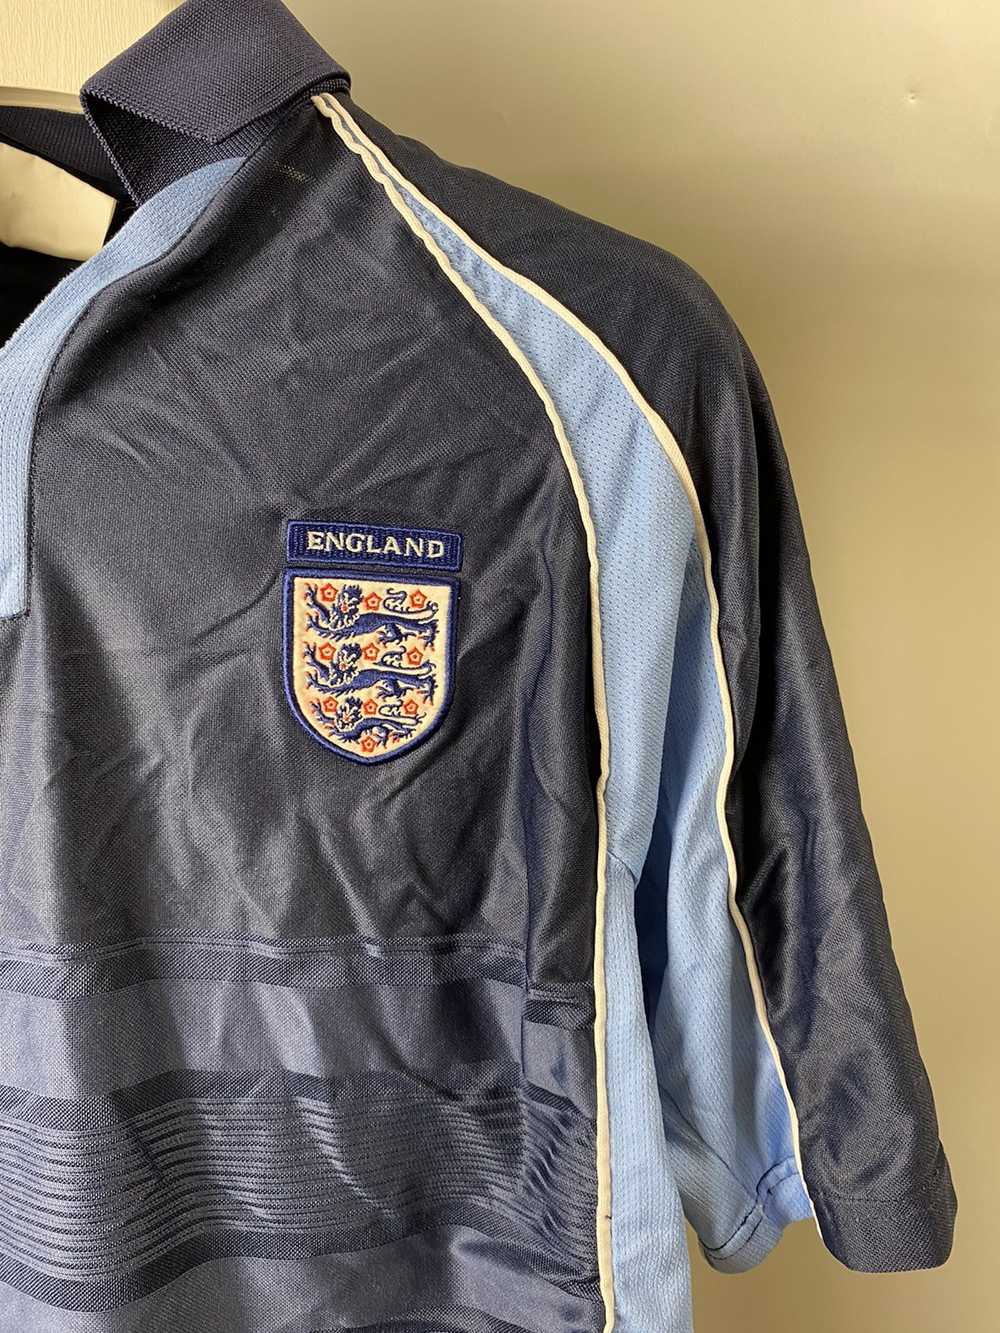 Soccer Jersey × Sportswear × Vintage England Umbr… - image 6